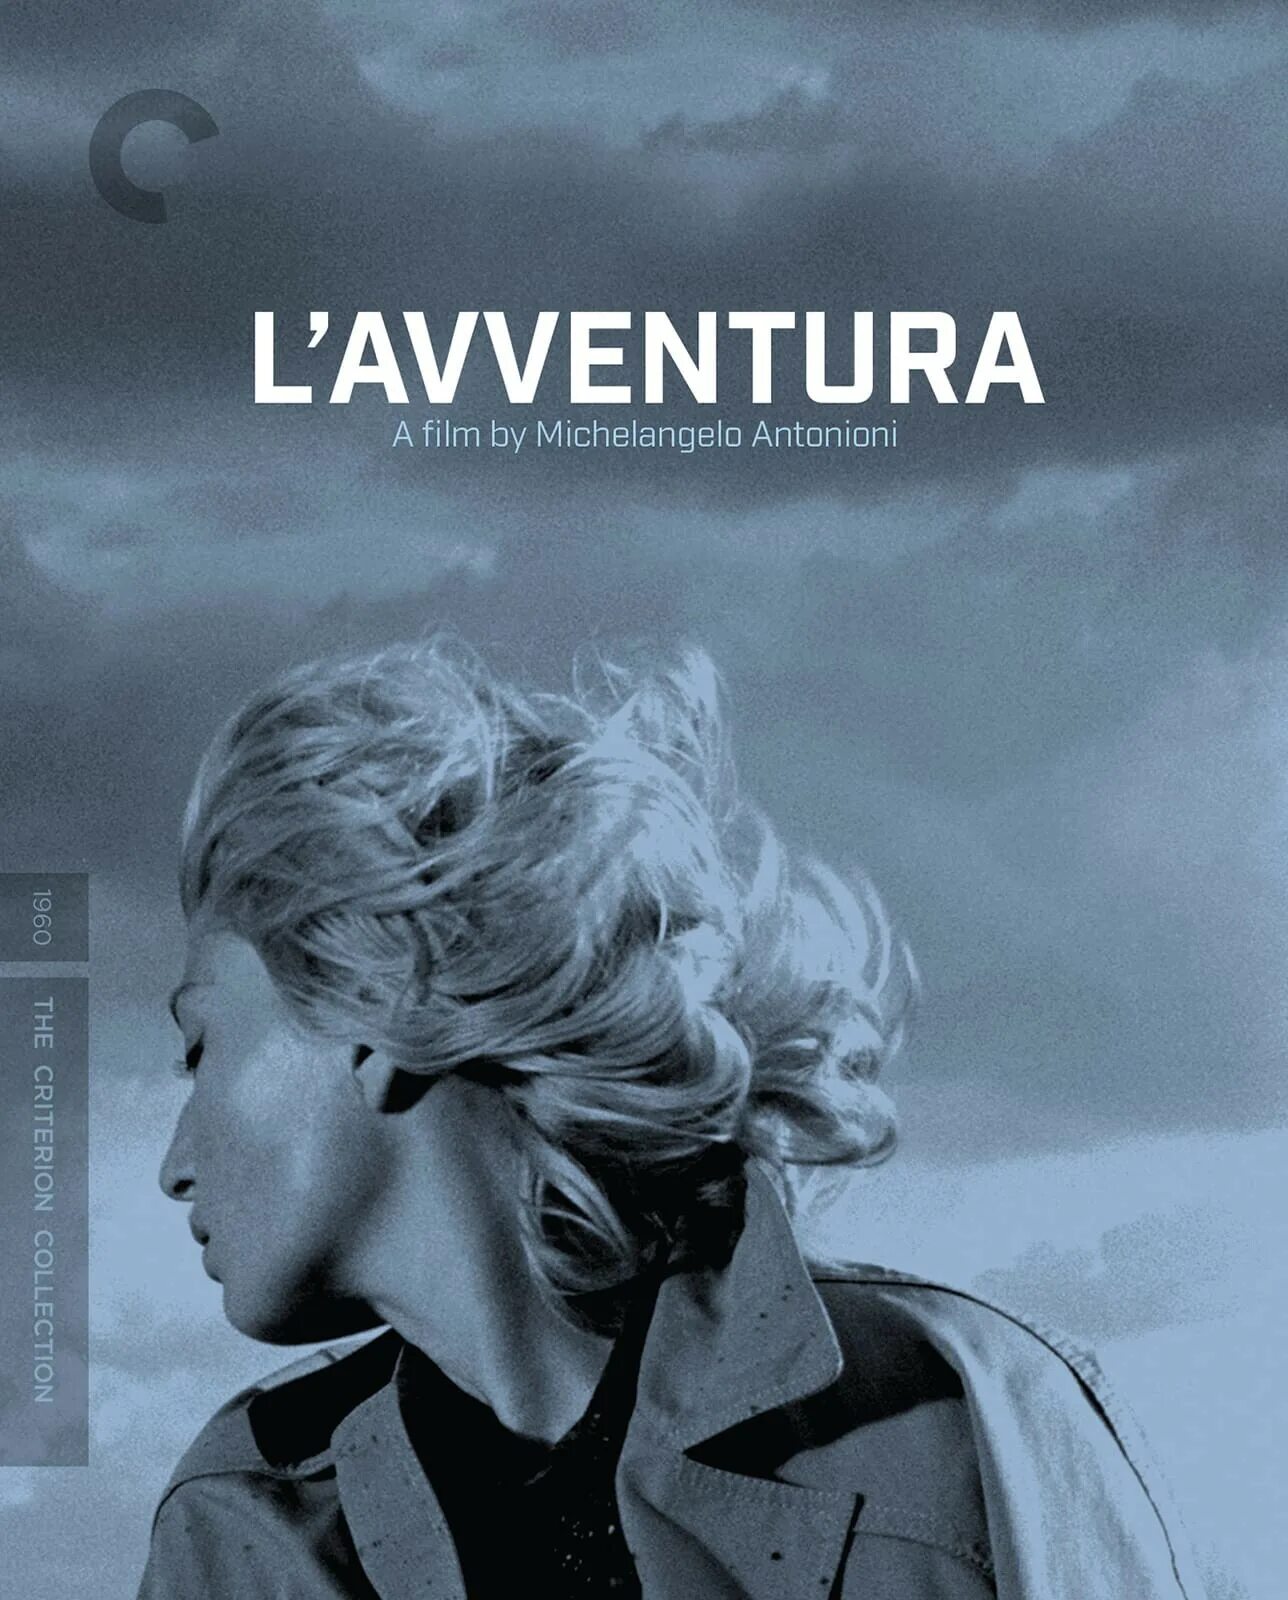 Приключение (l'avventura) 1960. Трилогия отчуждения Антониони. Приключение / l’avventura (Микеланджело Антониони — 1960).